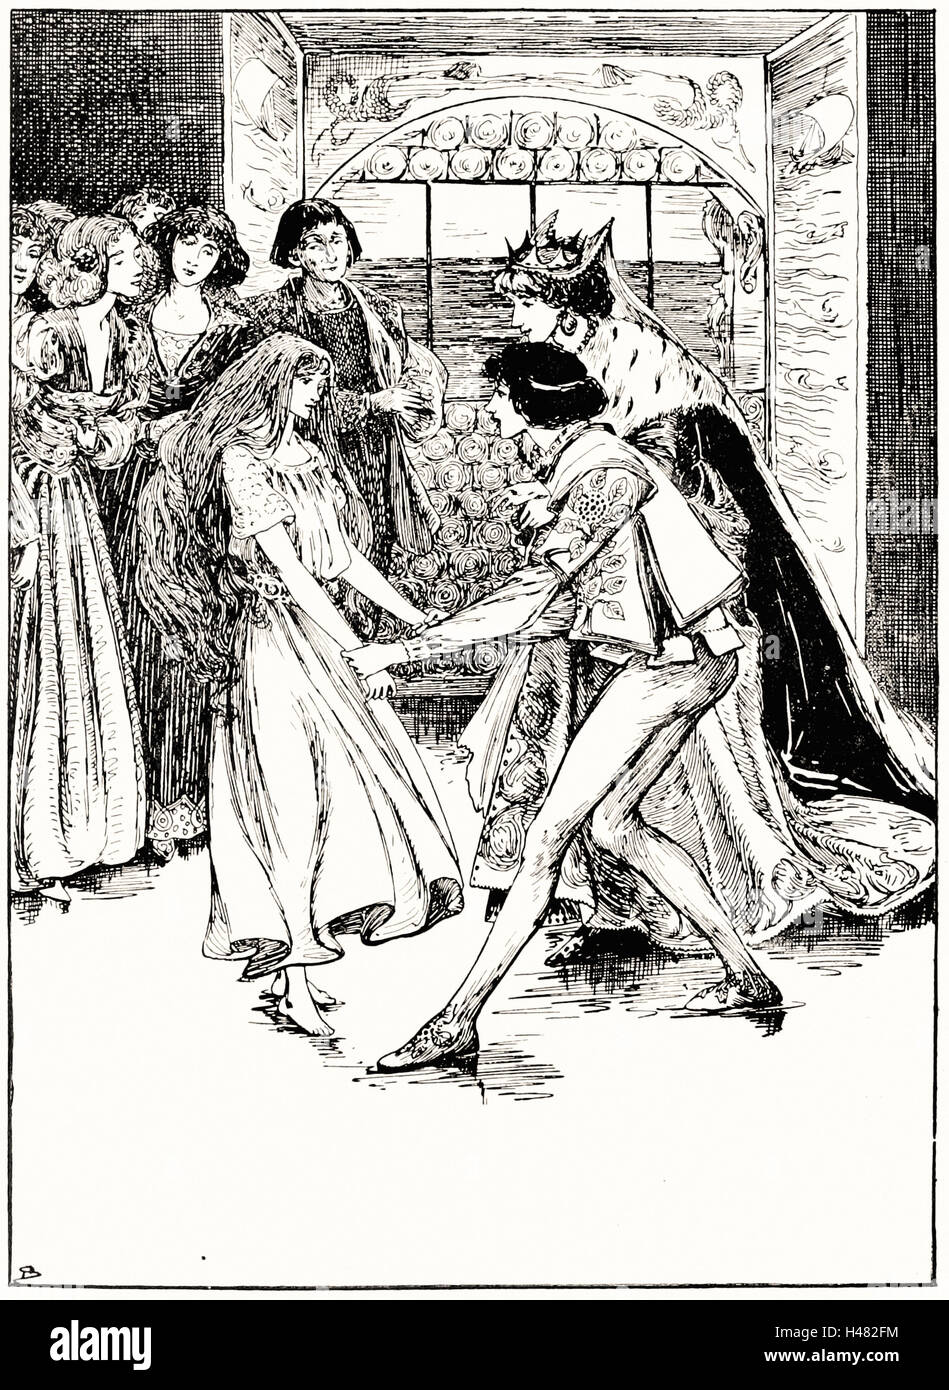 Helen Stratton - página 136 ilustración en los cuentos de hadas de Andersen Foto de stock